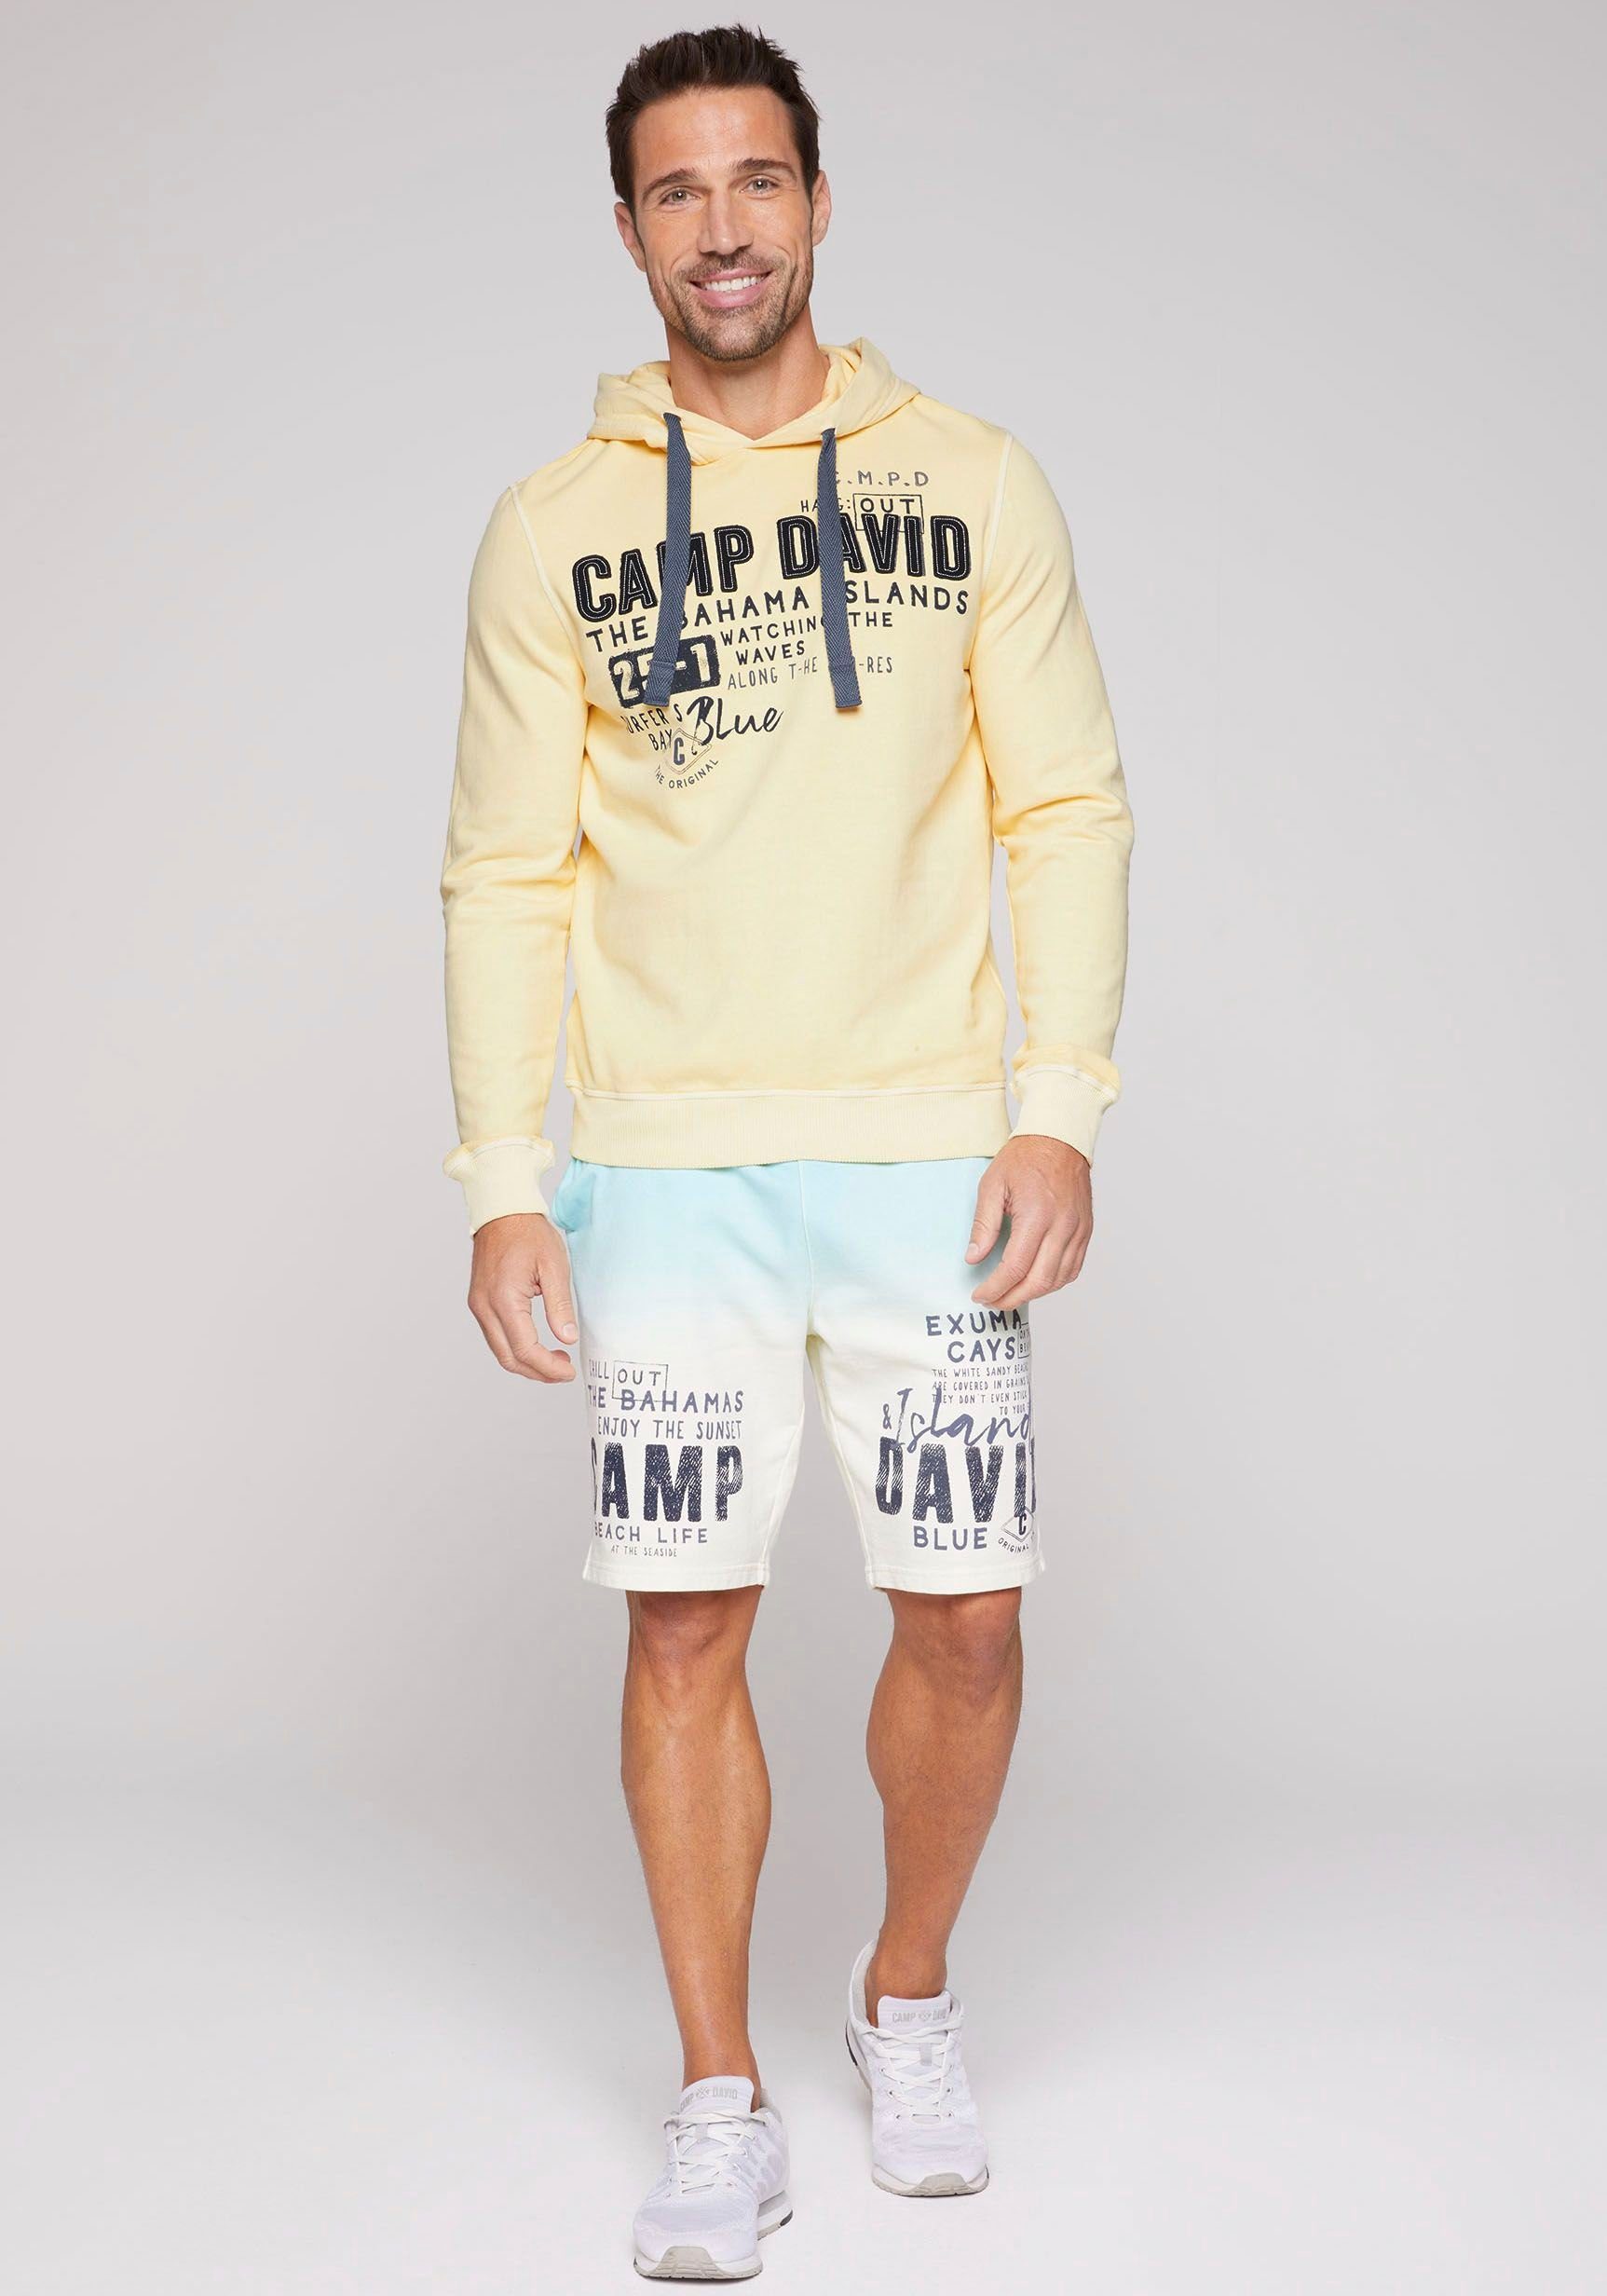 sun DAVID CAMP banana mit Kapuzensweatshirt Schriftzügen